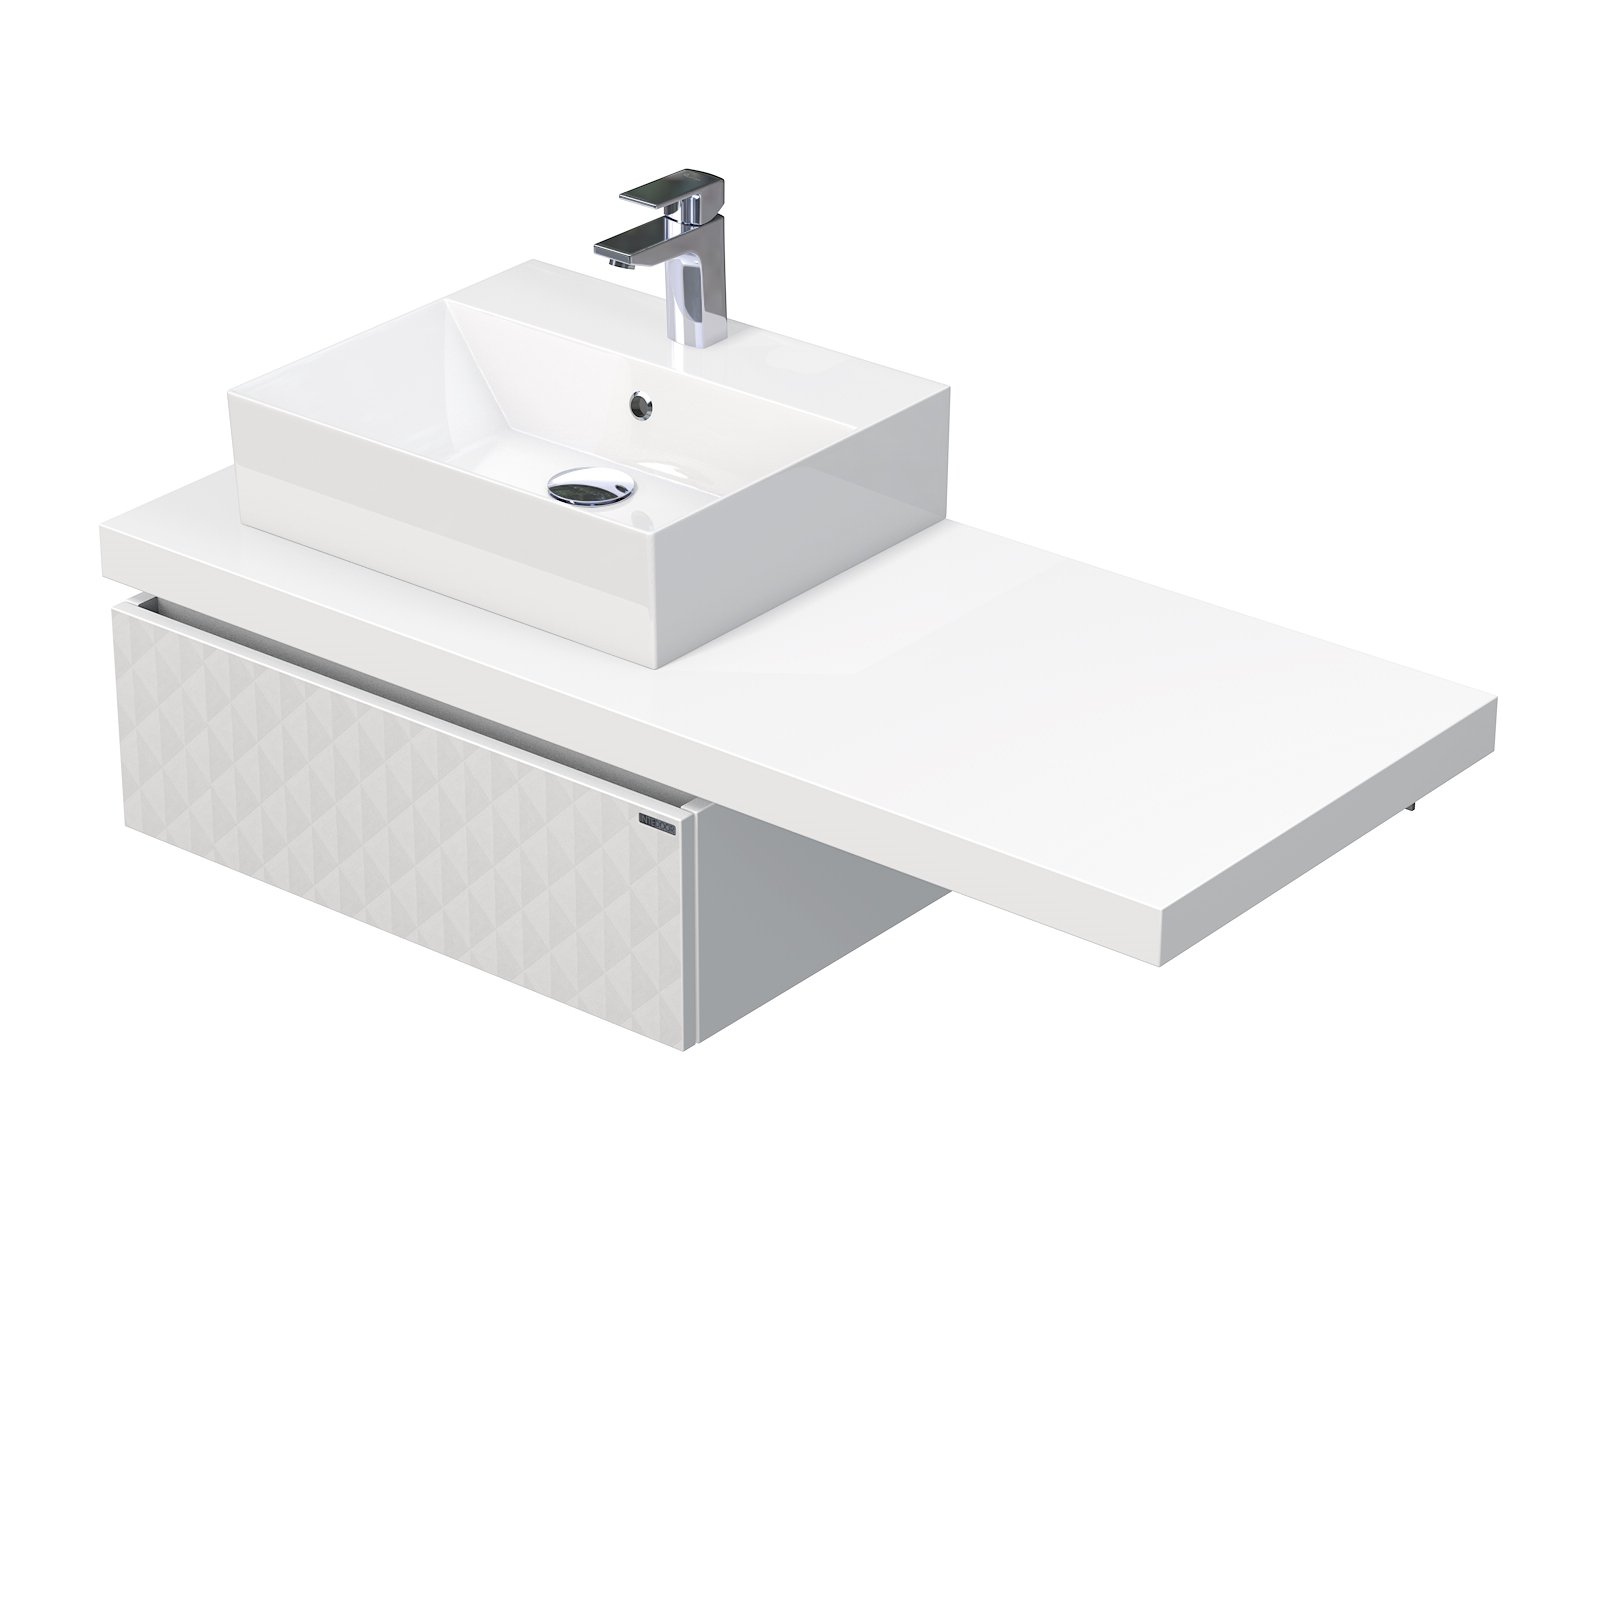 Intedoor Desk 3D - skříňka 120 cm s umyvadlem na desku vlevo, 1 zásuvka, závěsná, bílá DE 54 3D 120 L STORM 1Z B073